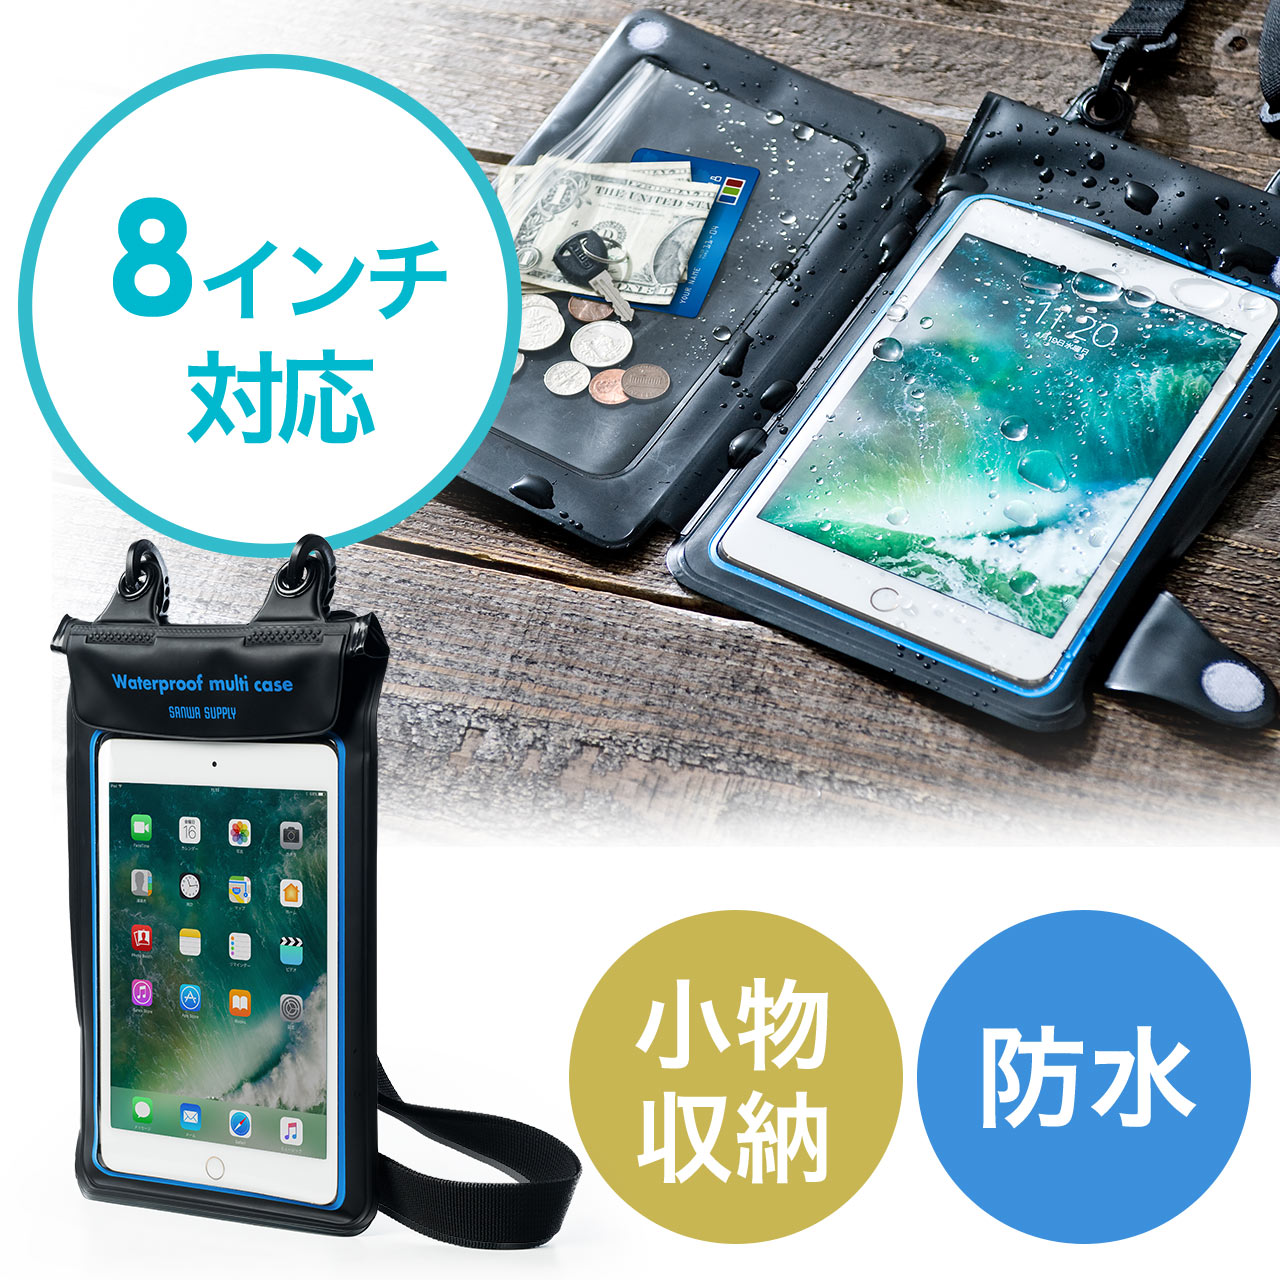 iPad・タブレット対応 小物ポケット付き防水ケース（8インチまで対応・ストラップ付属・防水ポーチ・小銭/カード収納対応・IPX7）  200-TABC008の販売商品 通販ならサンワダイレクト